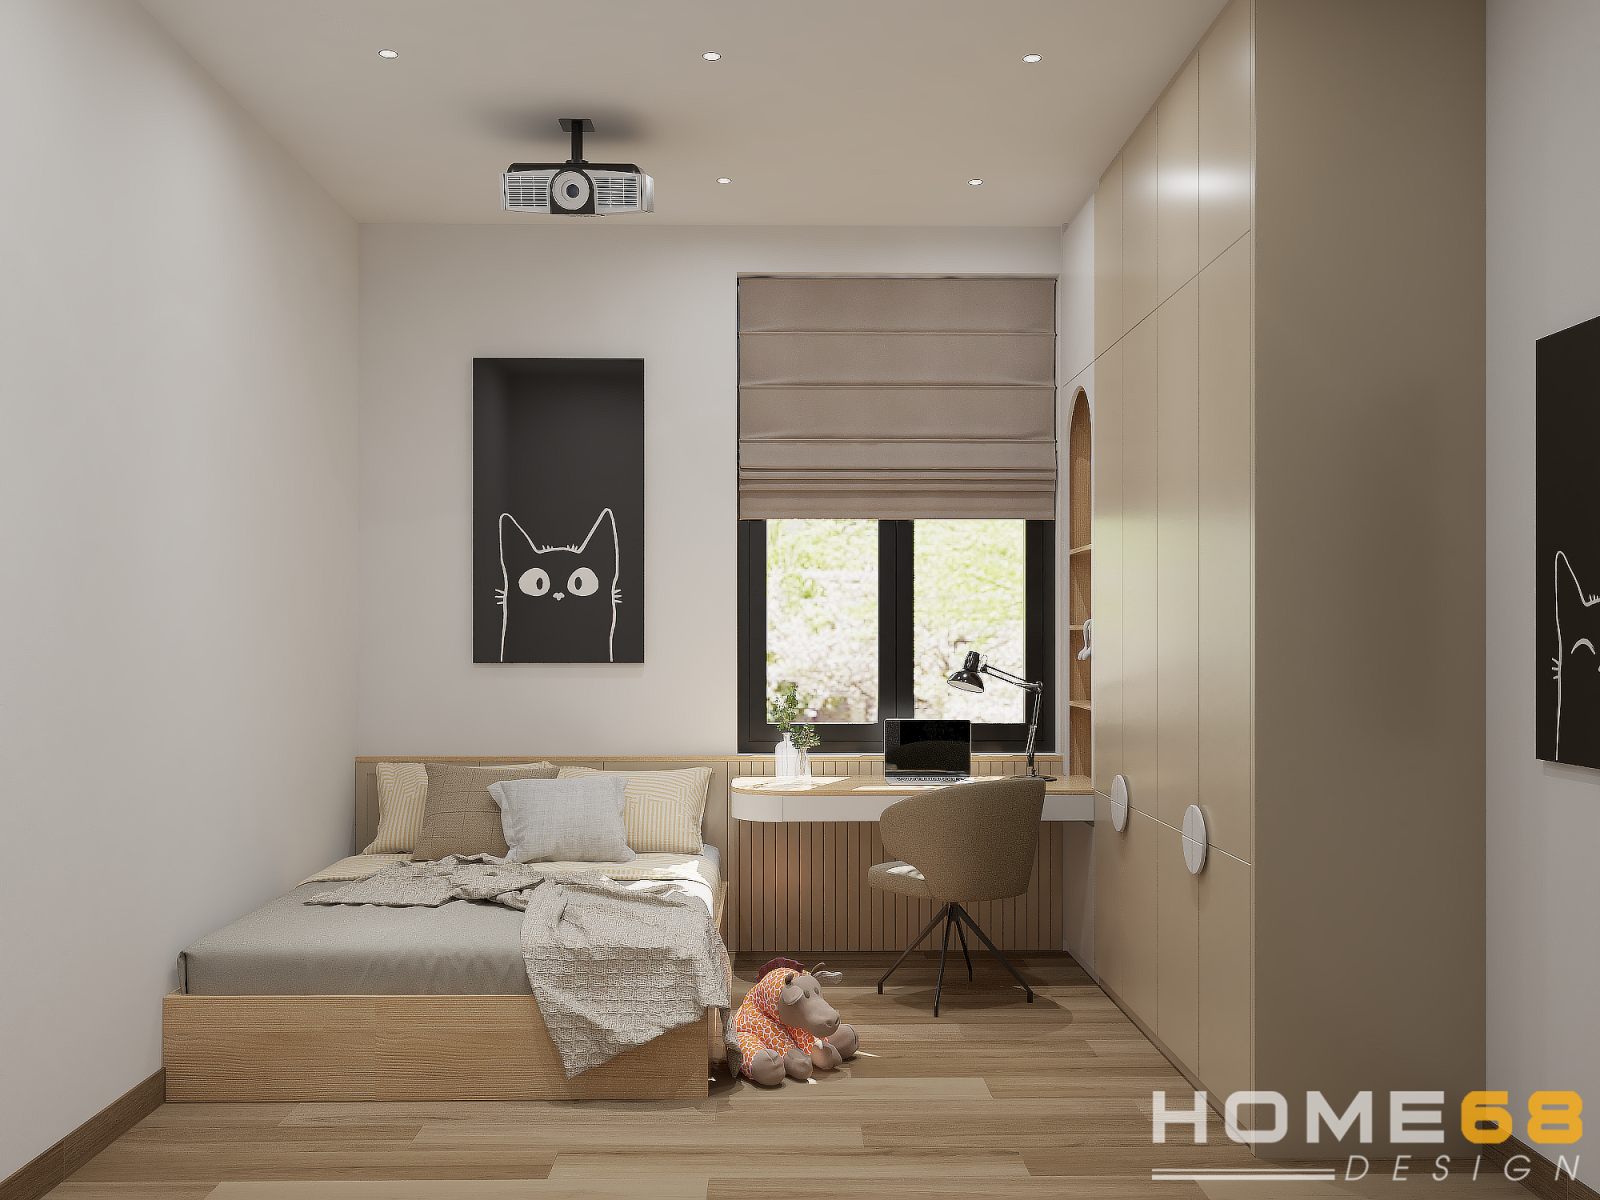 Mẫu thiết kế nội thất phòng ngủ tối giản, tiện nghi với chât liệu gỗ